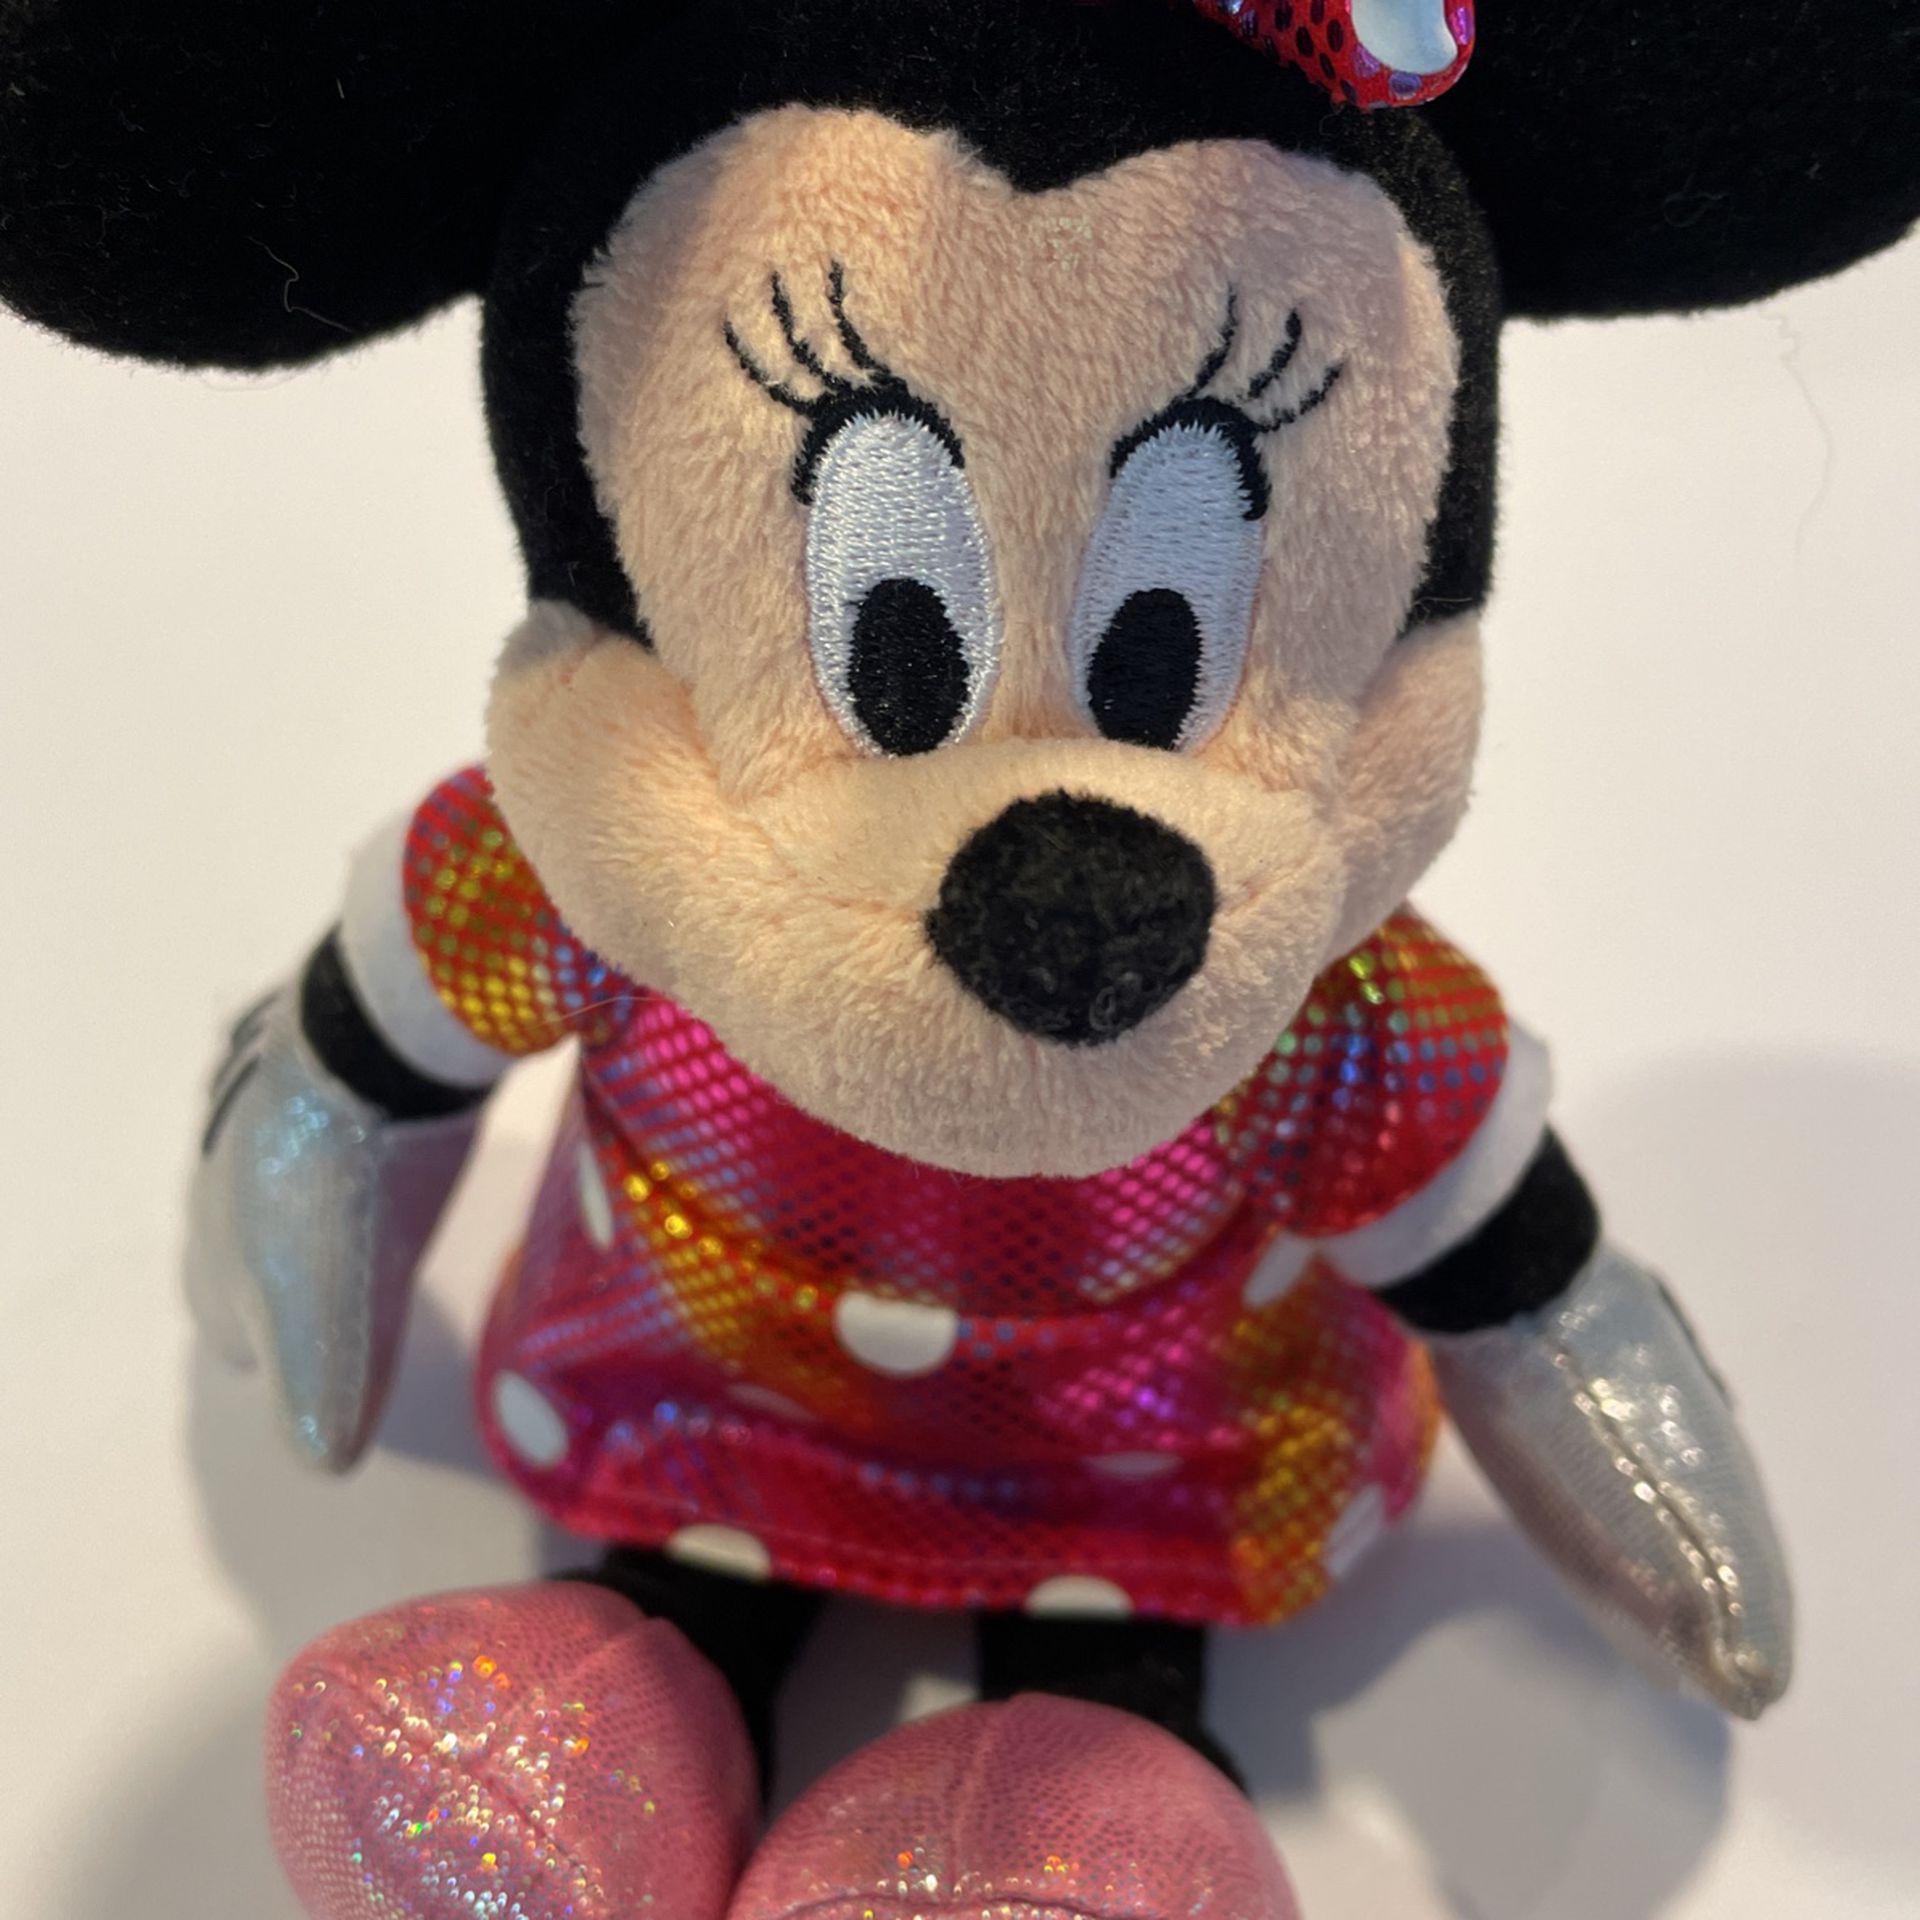 TY Beanie Baby 8" Disney Sparkle Minnie Mouse Ballerina Plush Toy*